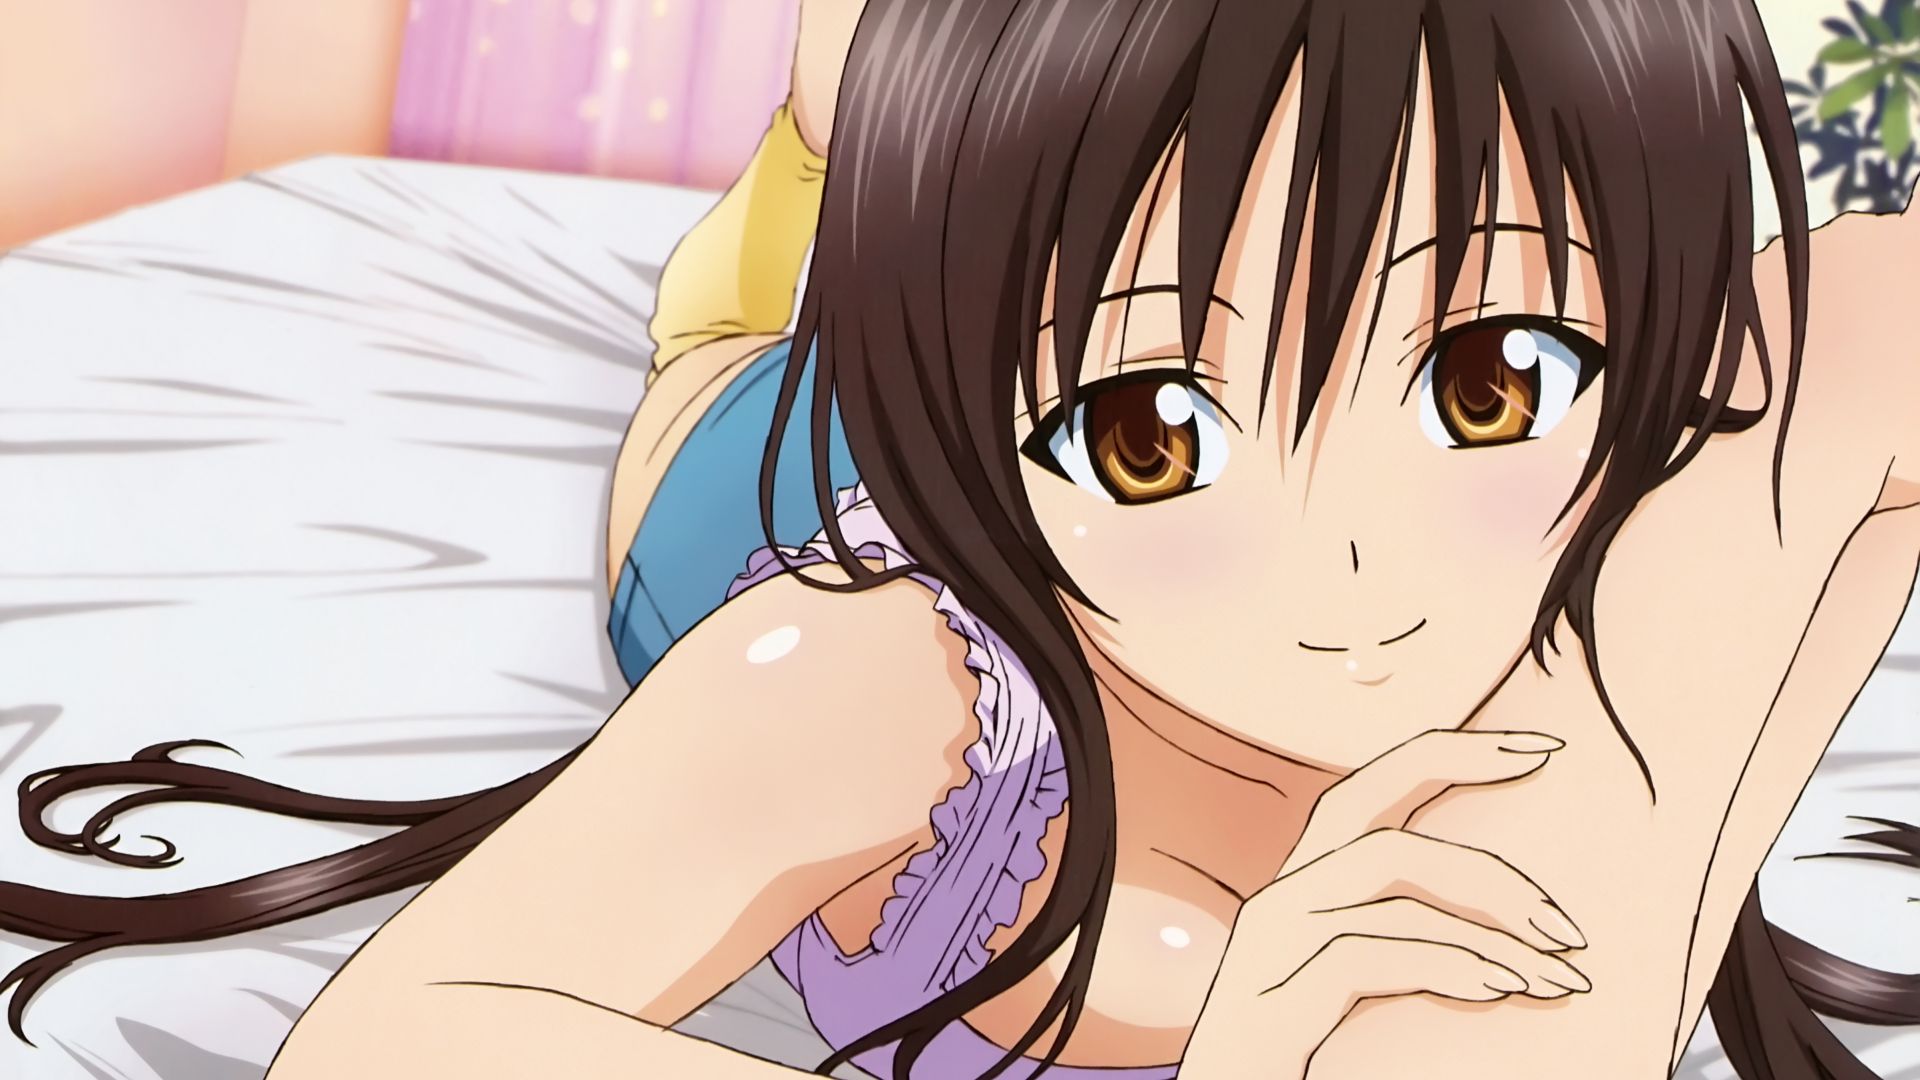 Wallpaper Yui Kotegawa in bed anime girl, To LOVE-Ru